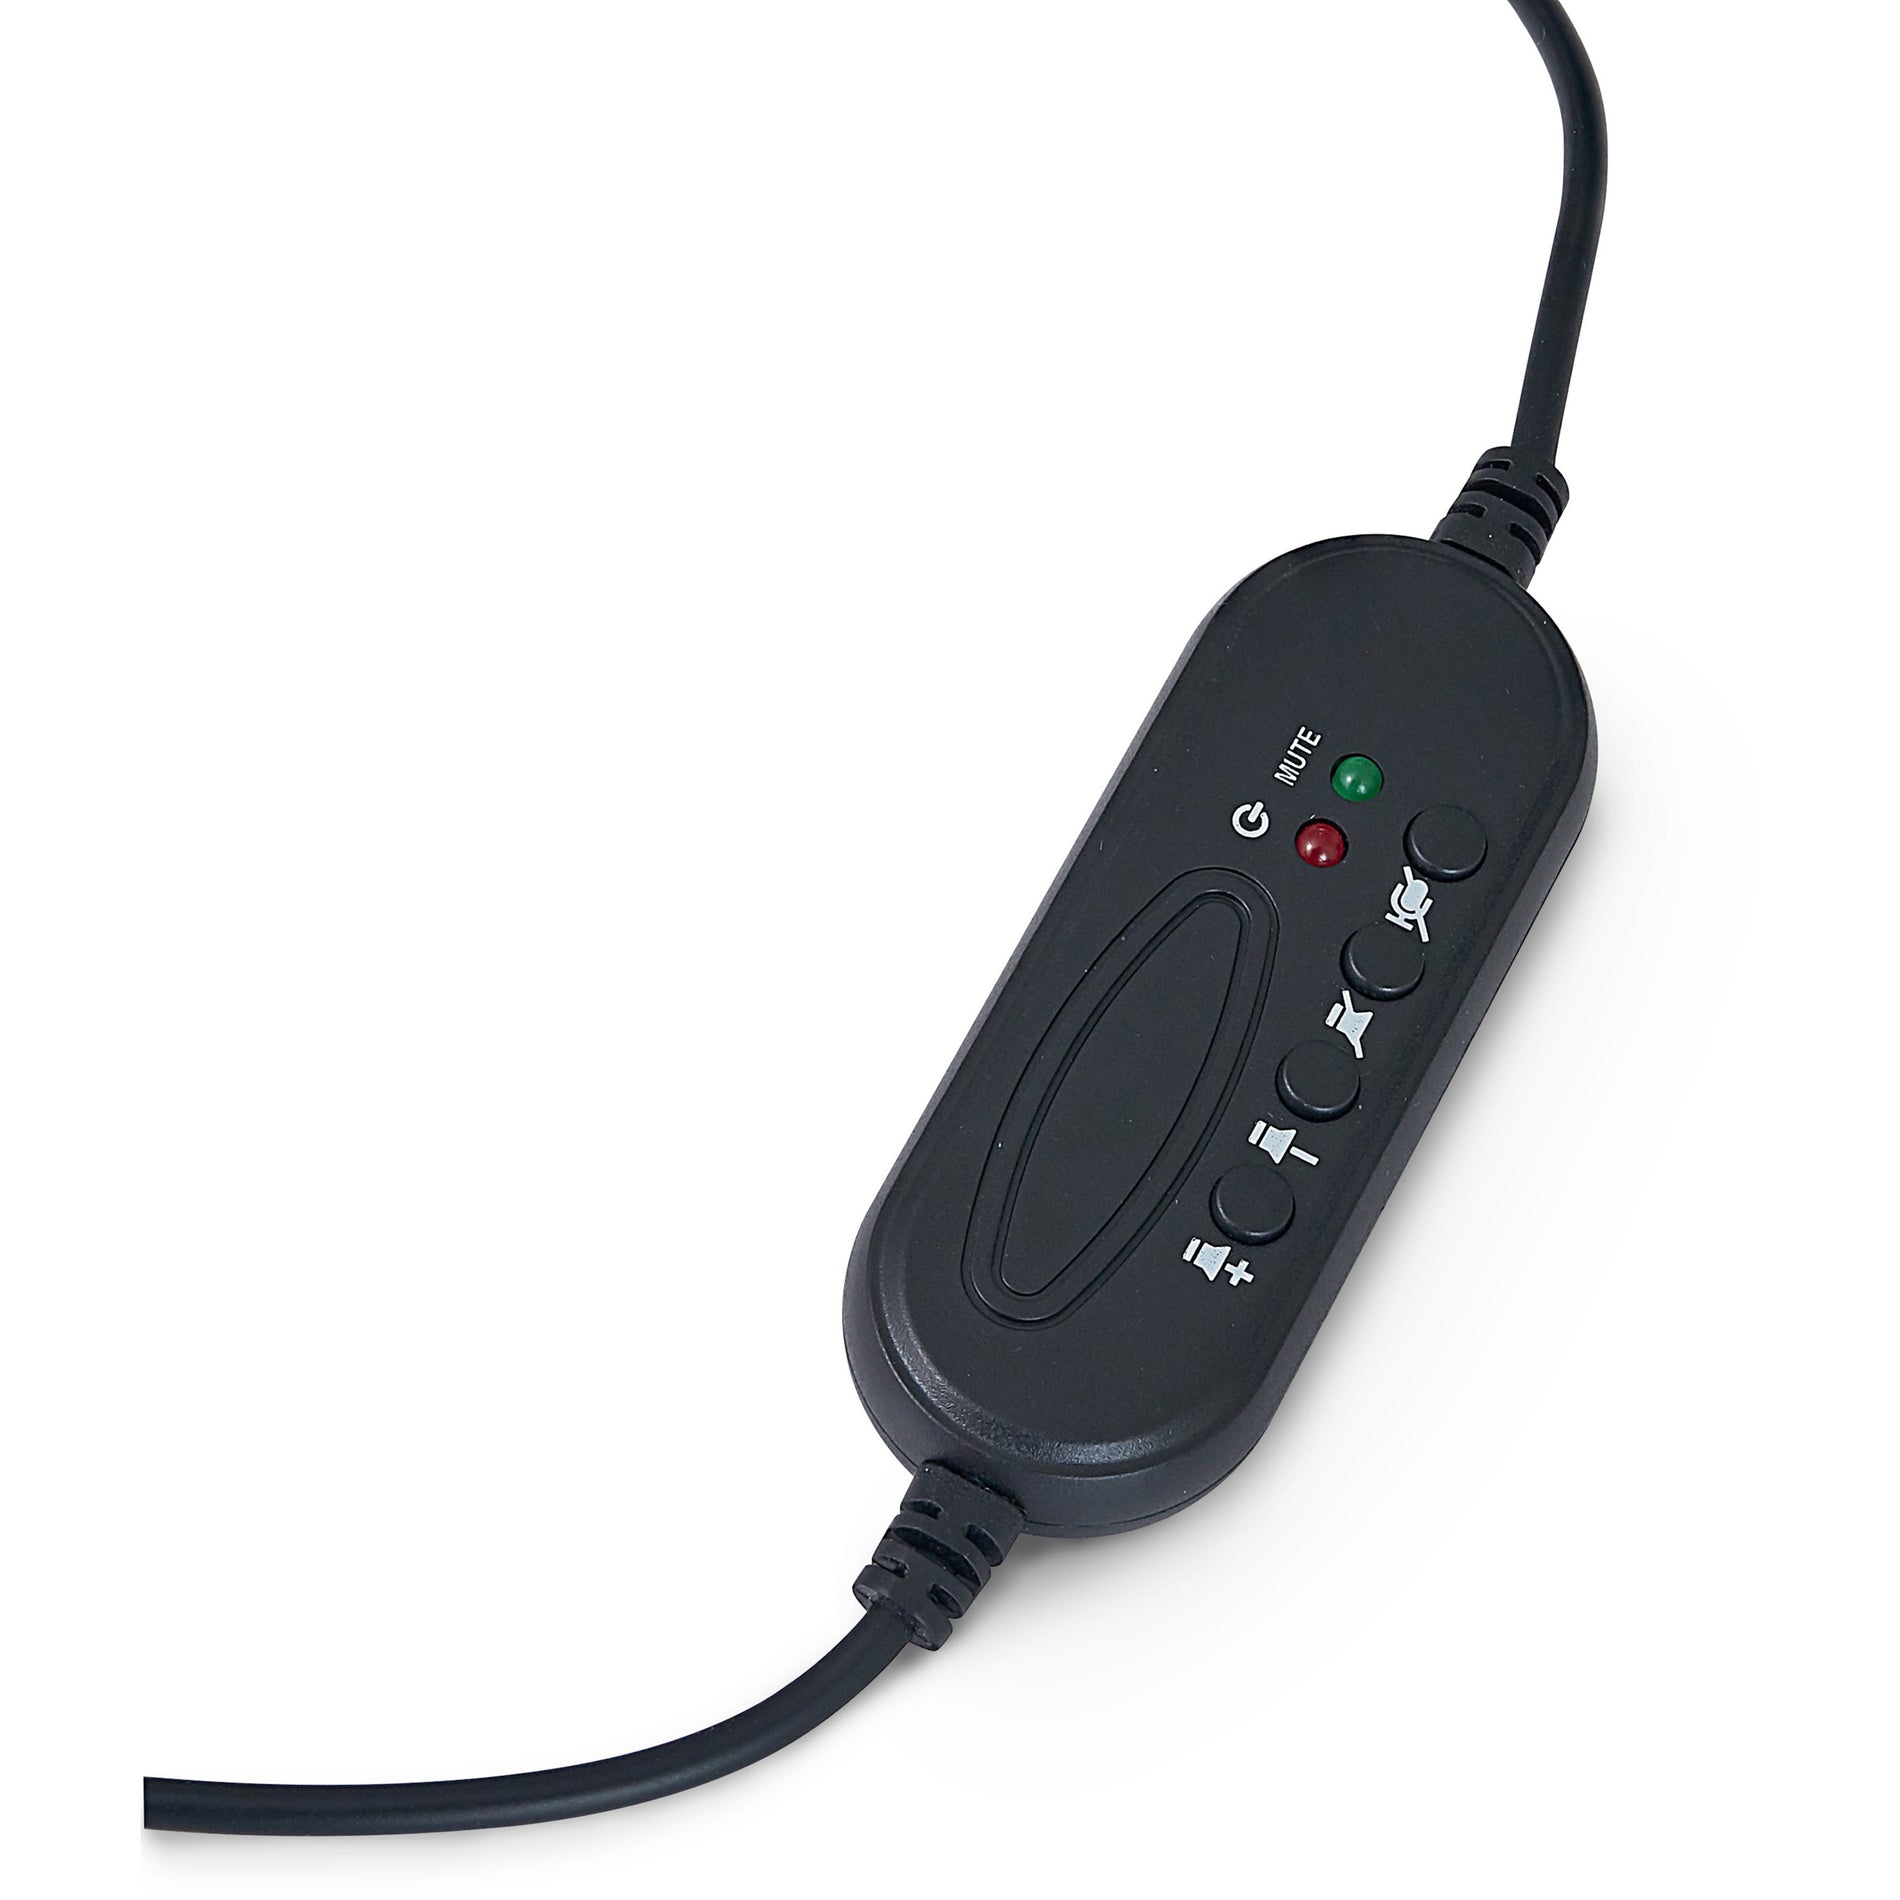 Écouteurs stéréo Verbatim 70723 avec microphone et télécommande intégrée USB Type A garantie d'un an